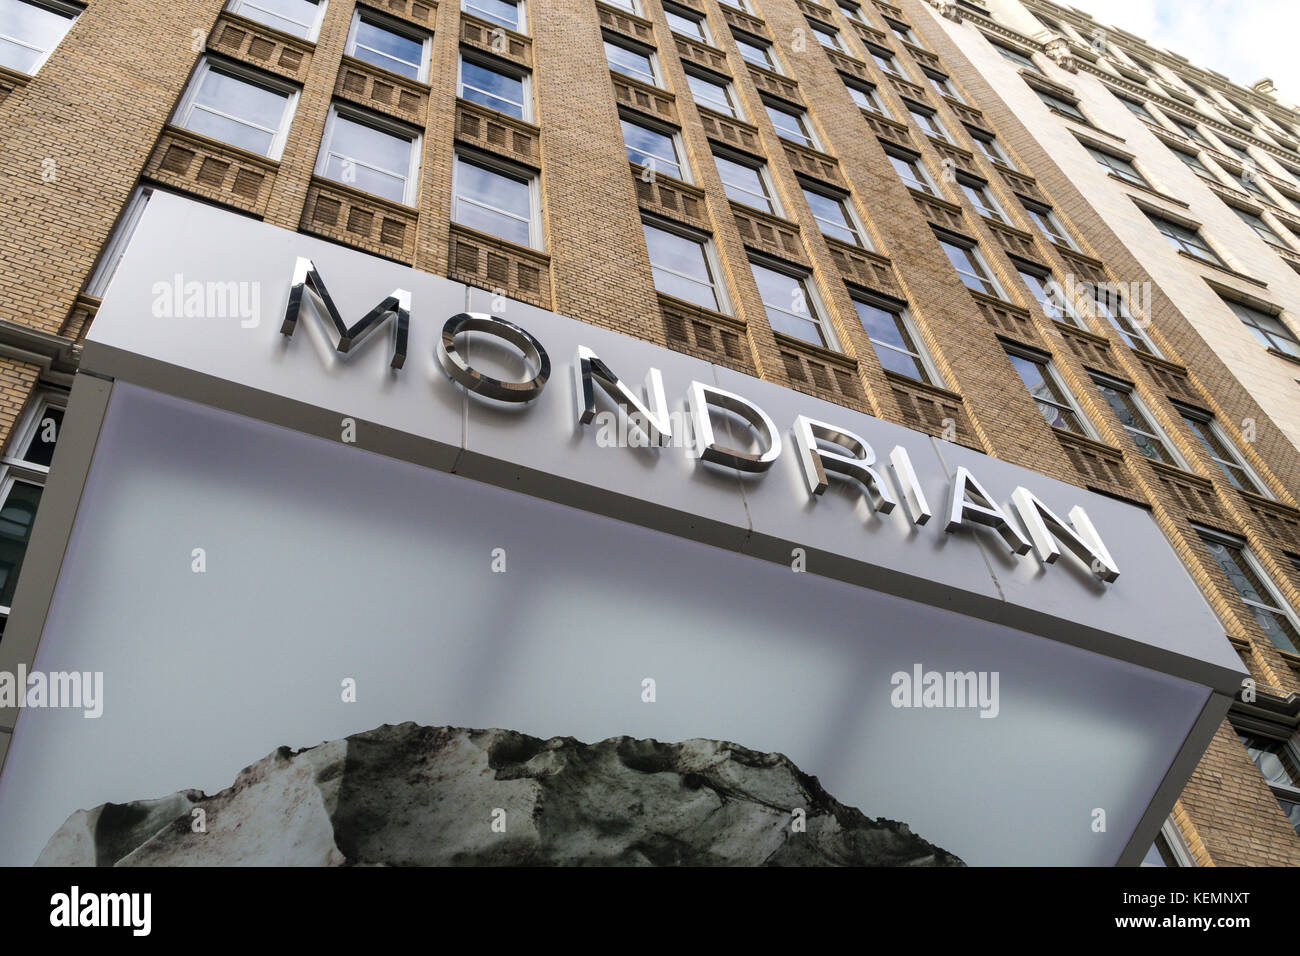 L'hôtel Mondrian sur Park Avenue, New York, USA Banque D'Images